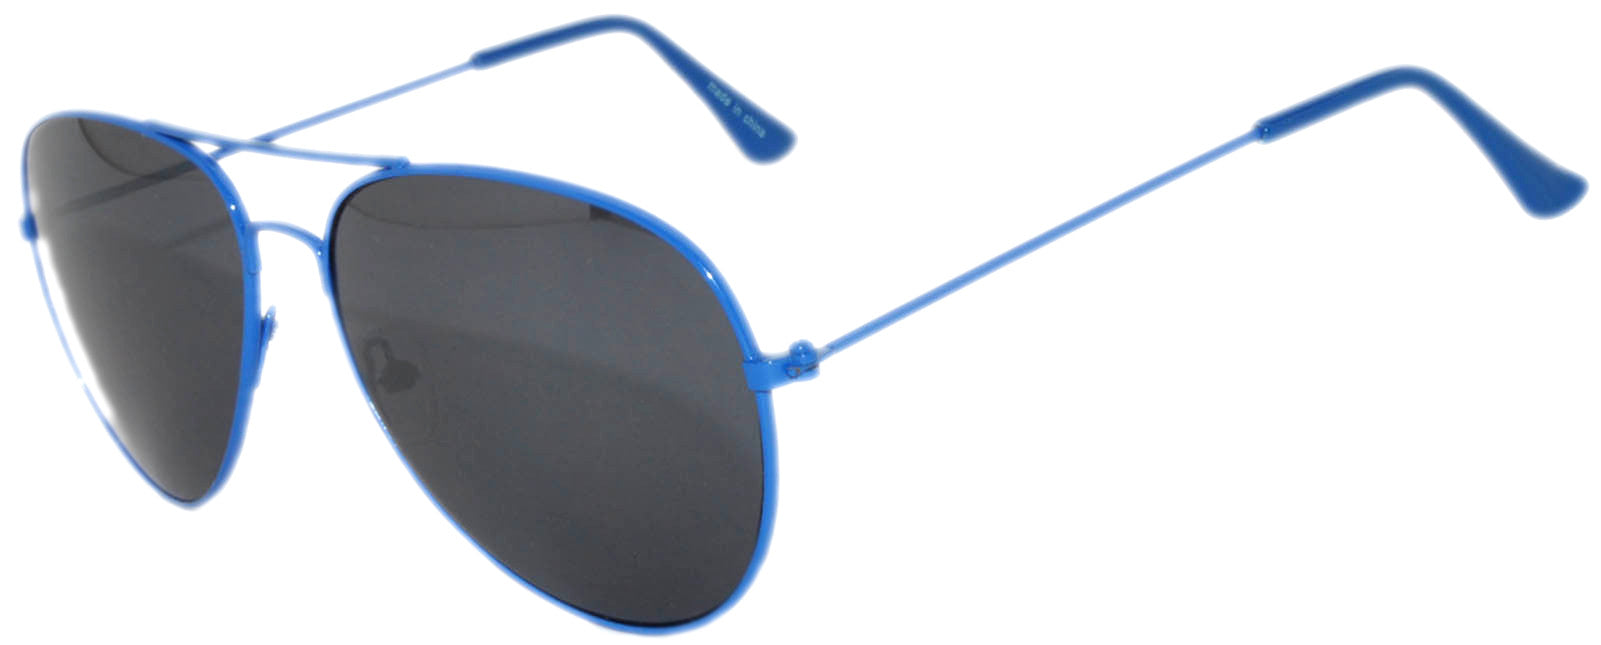 Aviator Sunglasses - Blue Frame / Smoke Lens